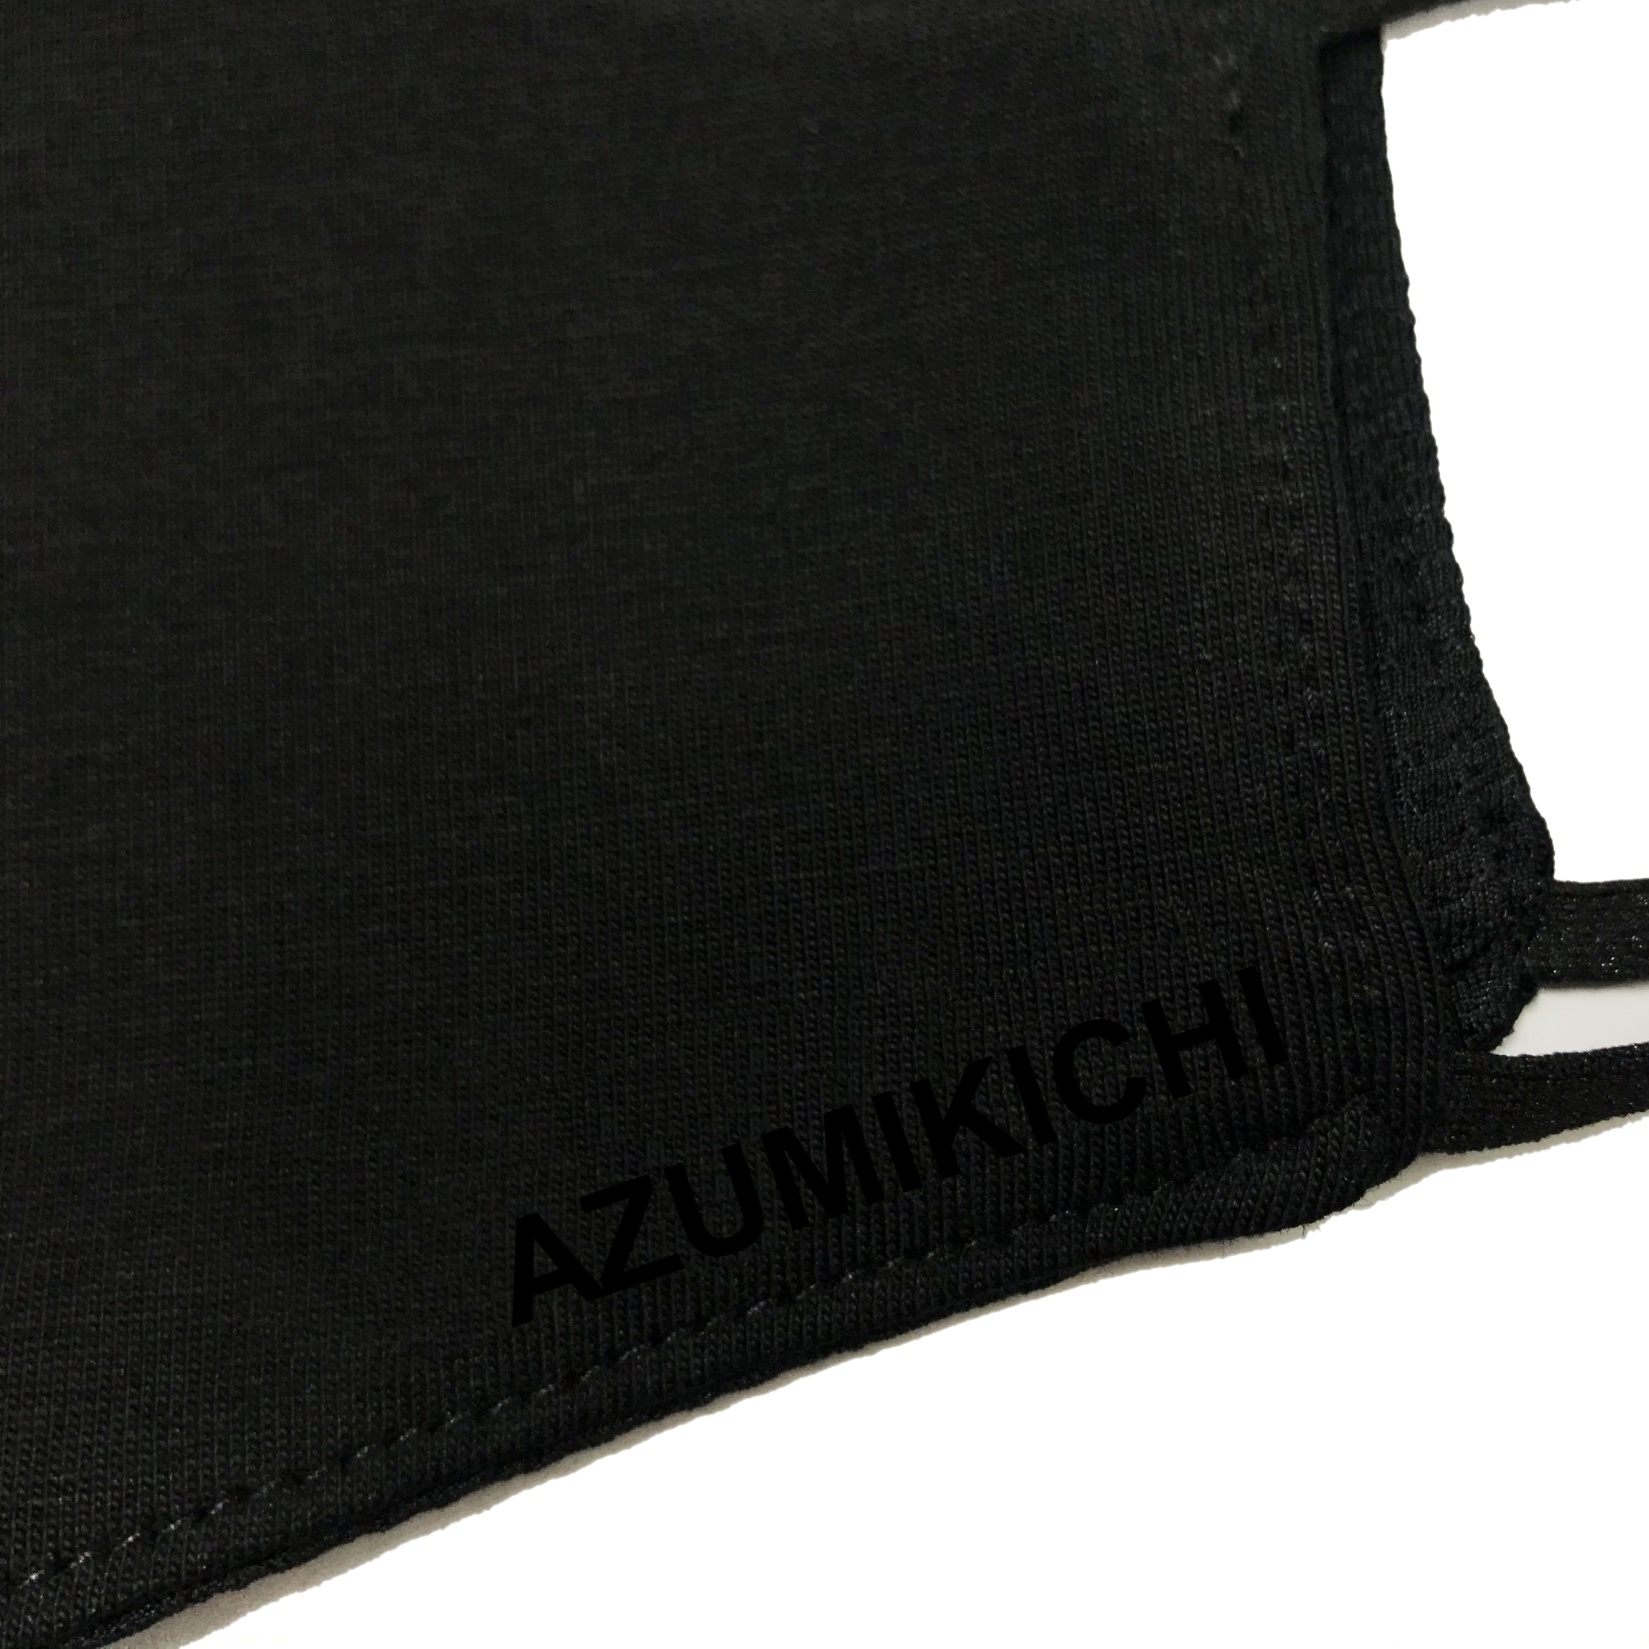 Hình ảnh Khẩu trang vải Azumikichi màu đen, khẩu trang thời trang cao cấp sang trọng